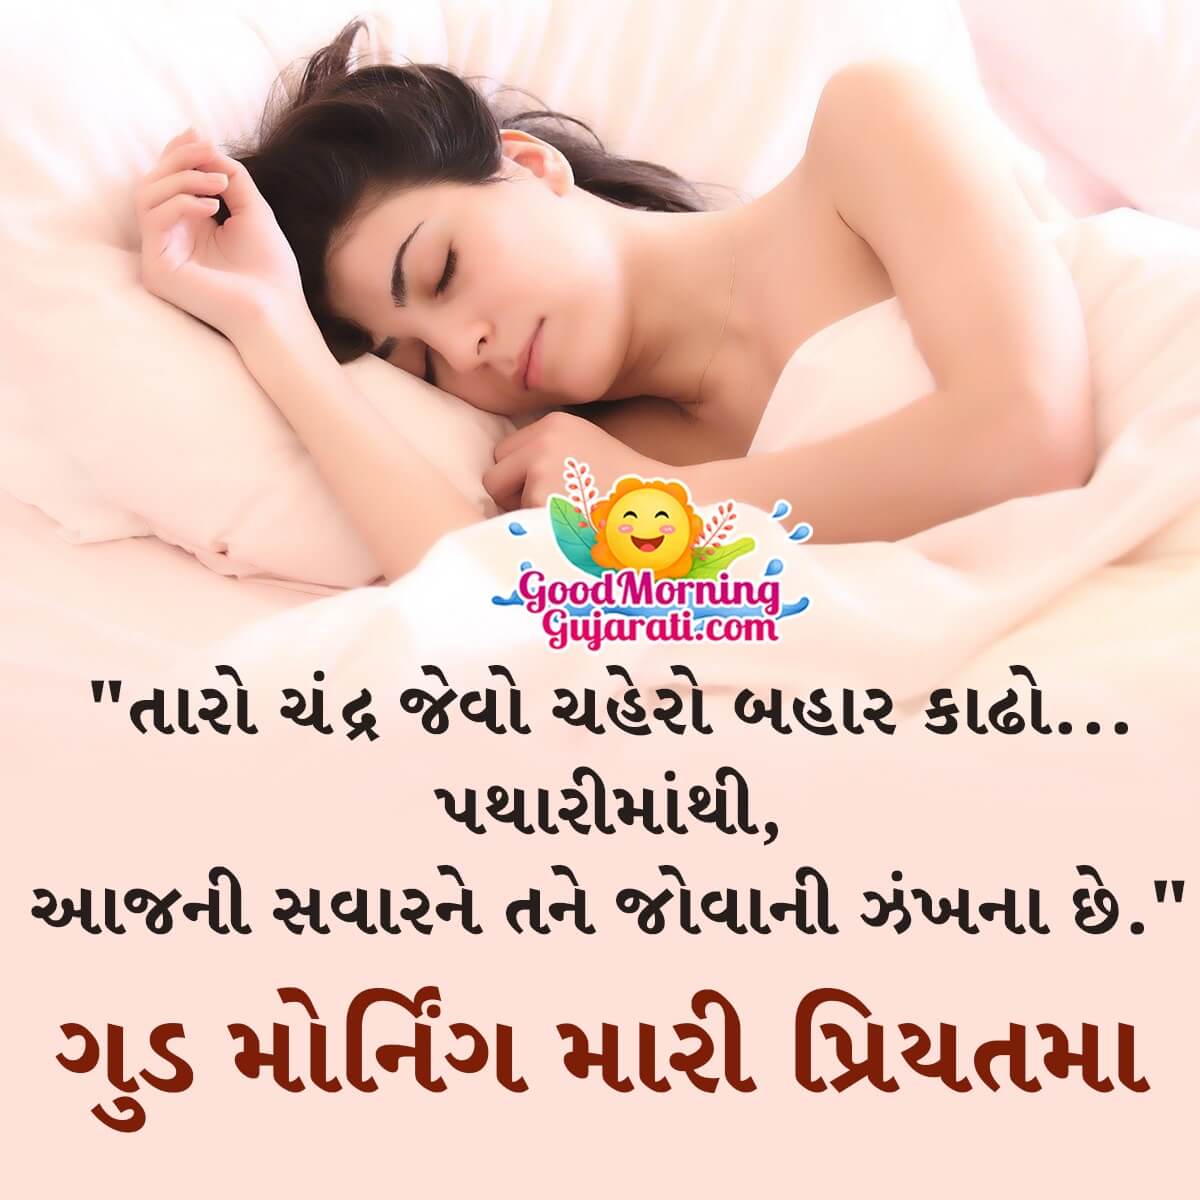 Romantic Good Morning Gujarati Shayari Images